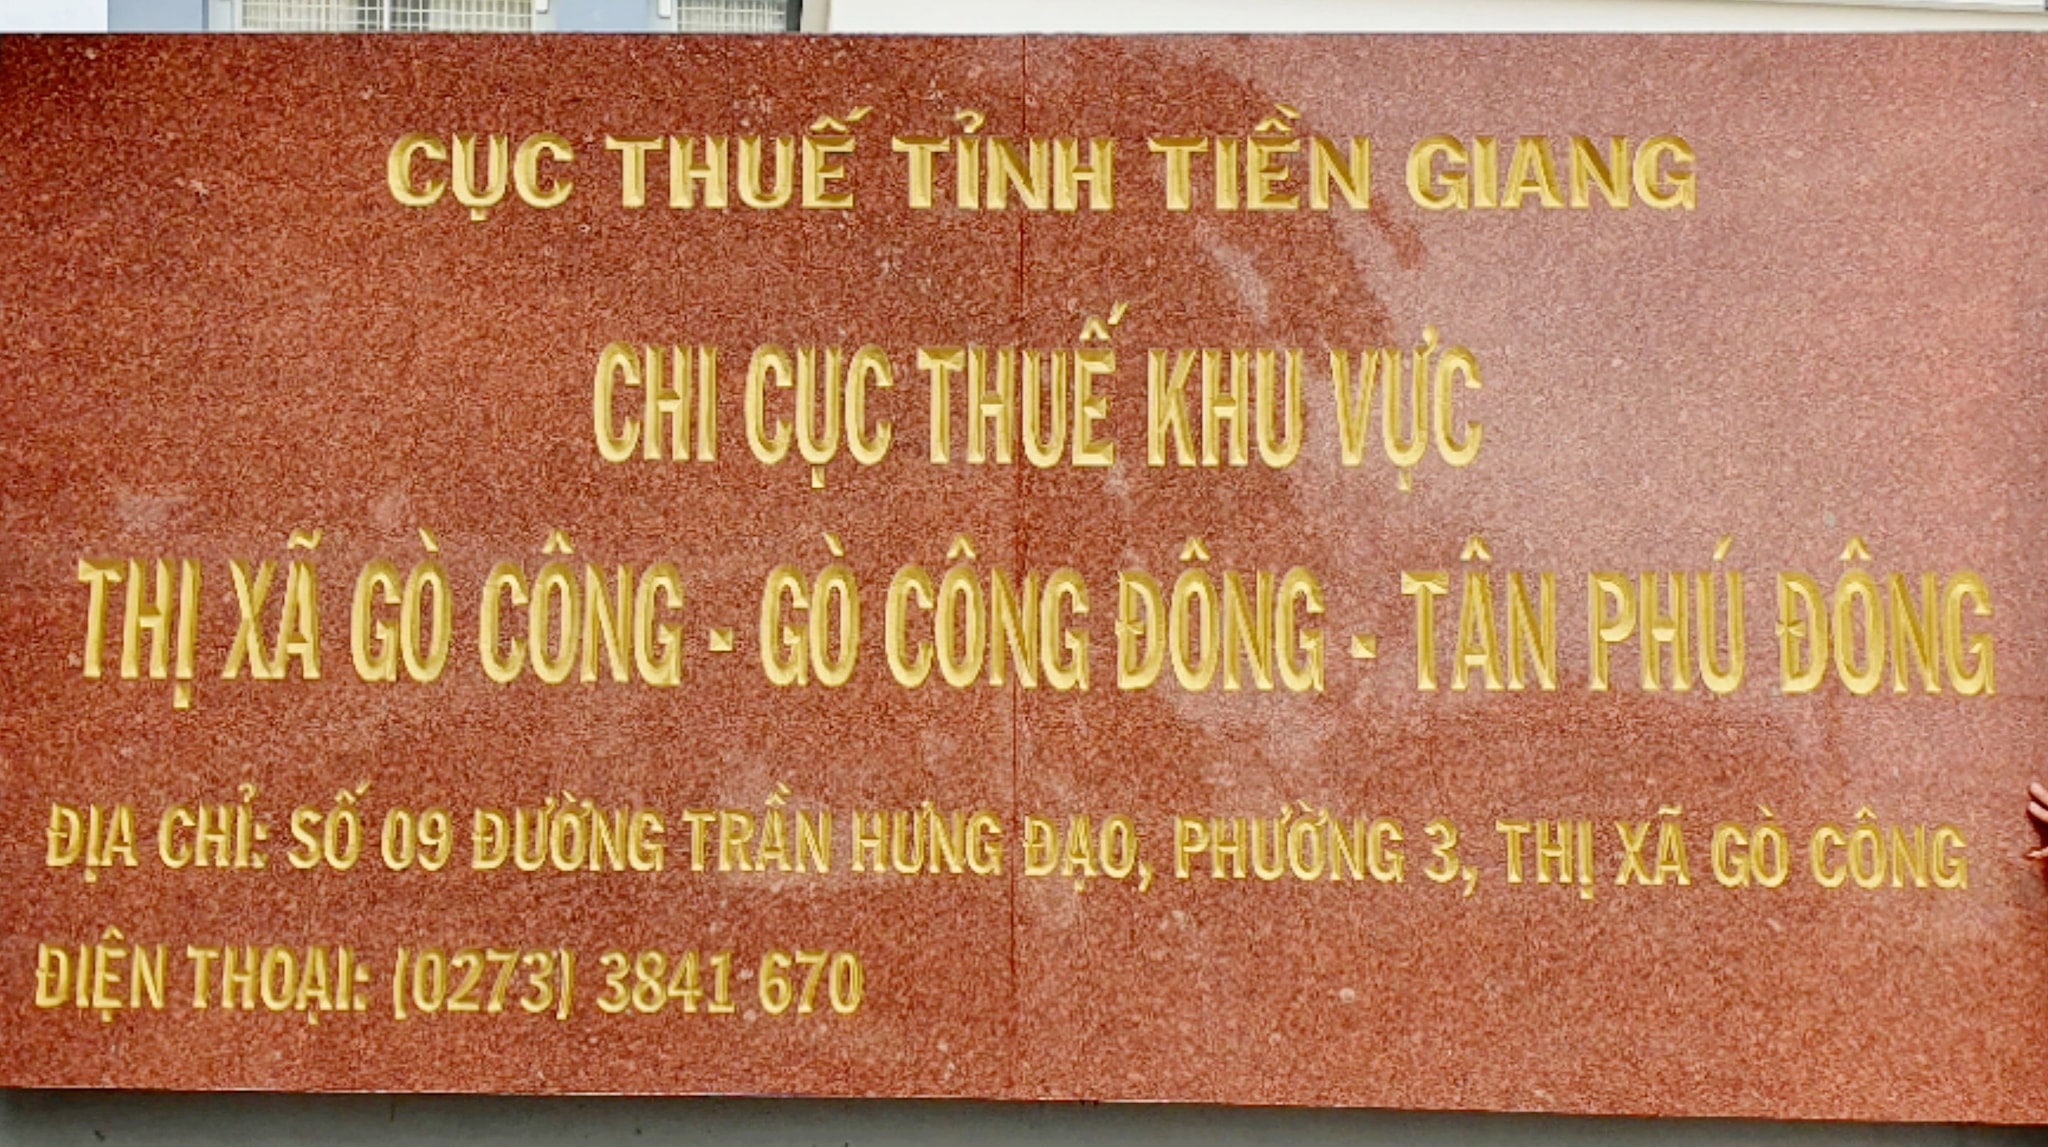 Số điện thoại chi cục thuế Gò Công Gò Công Đông Tân Phú Đông.